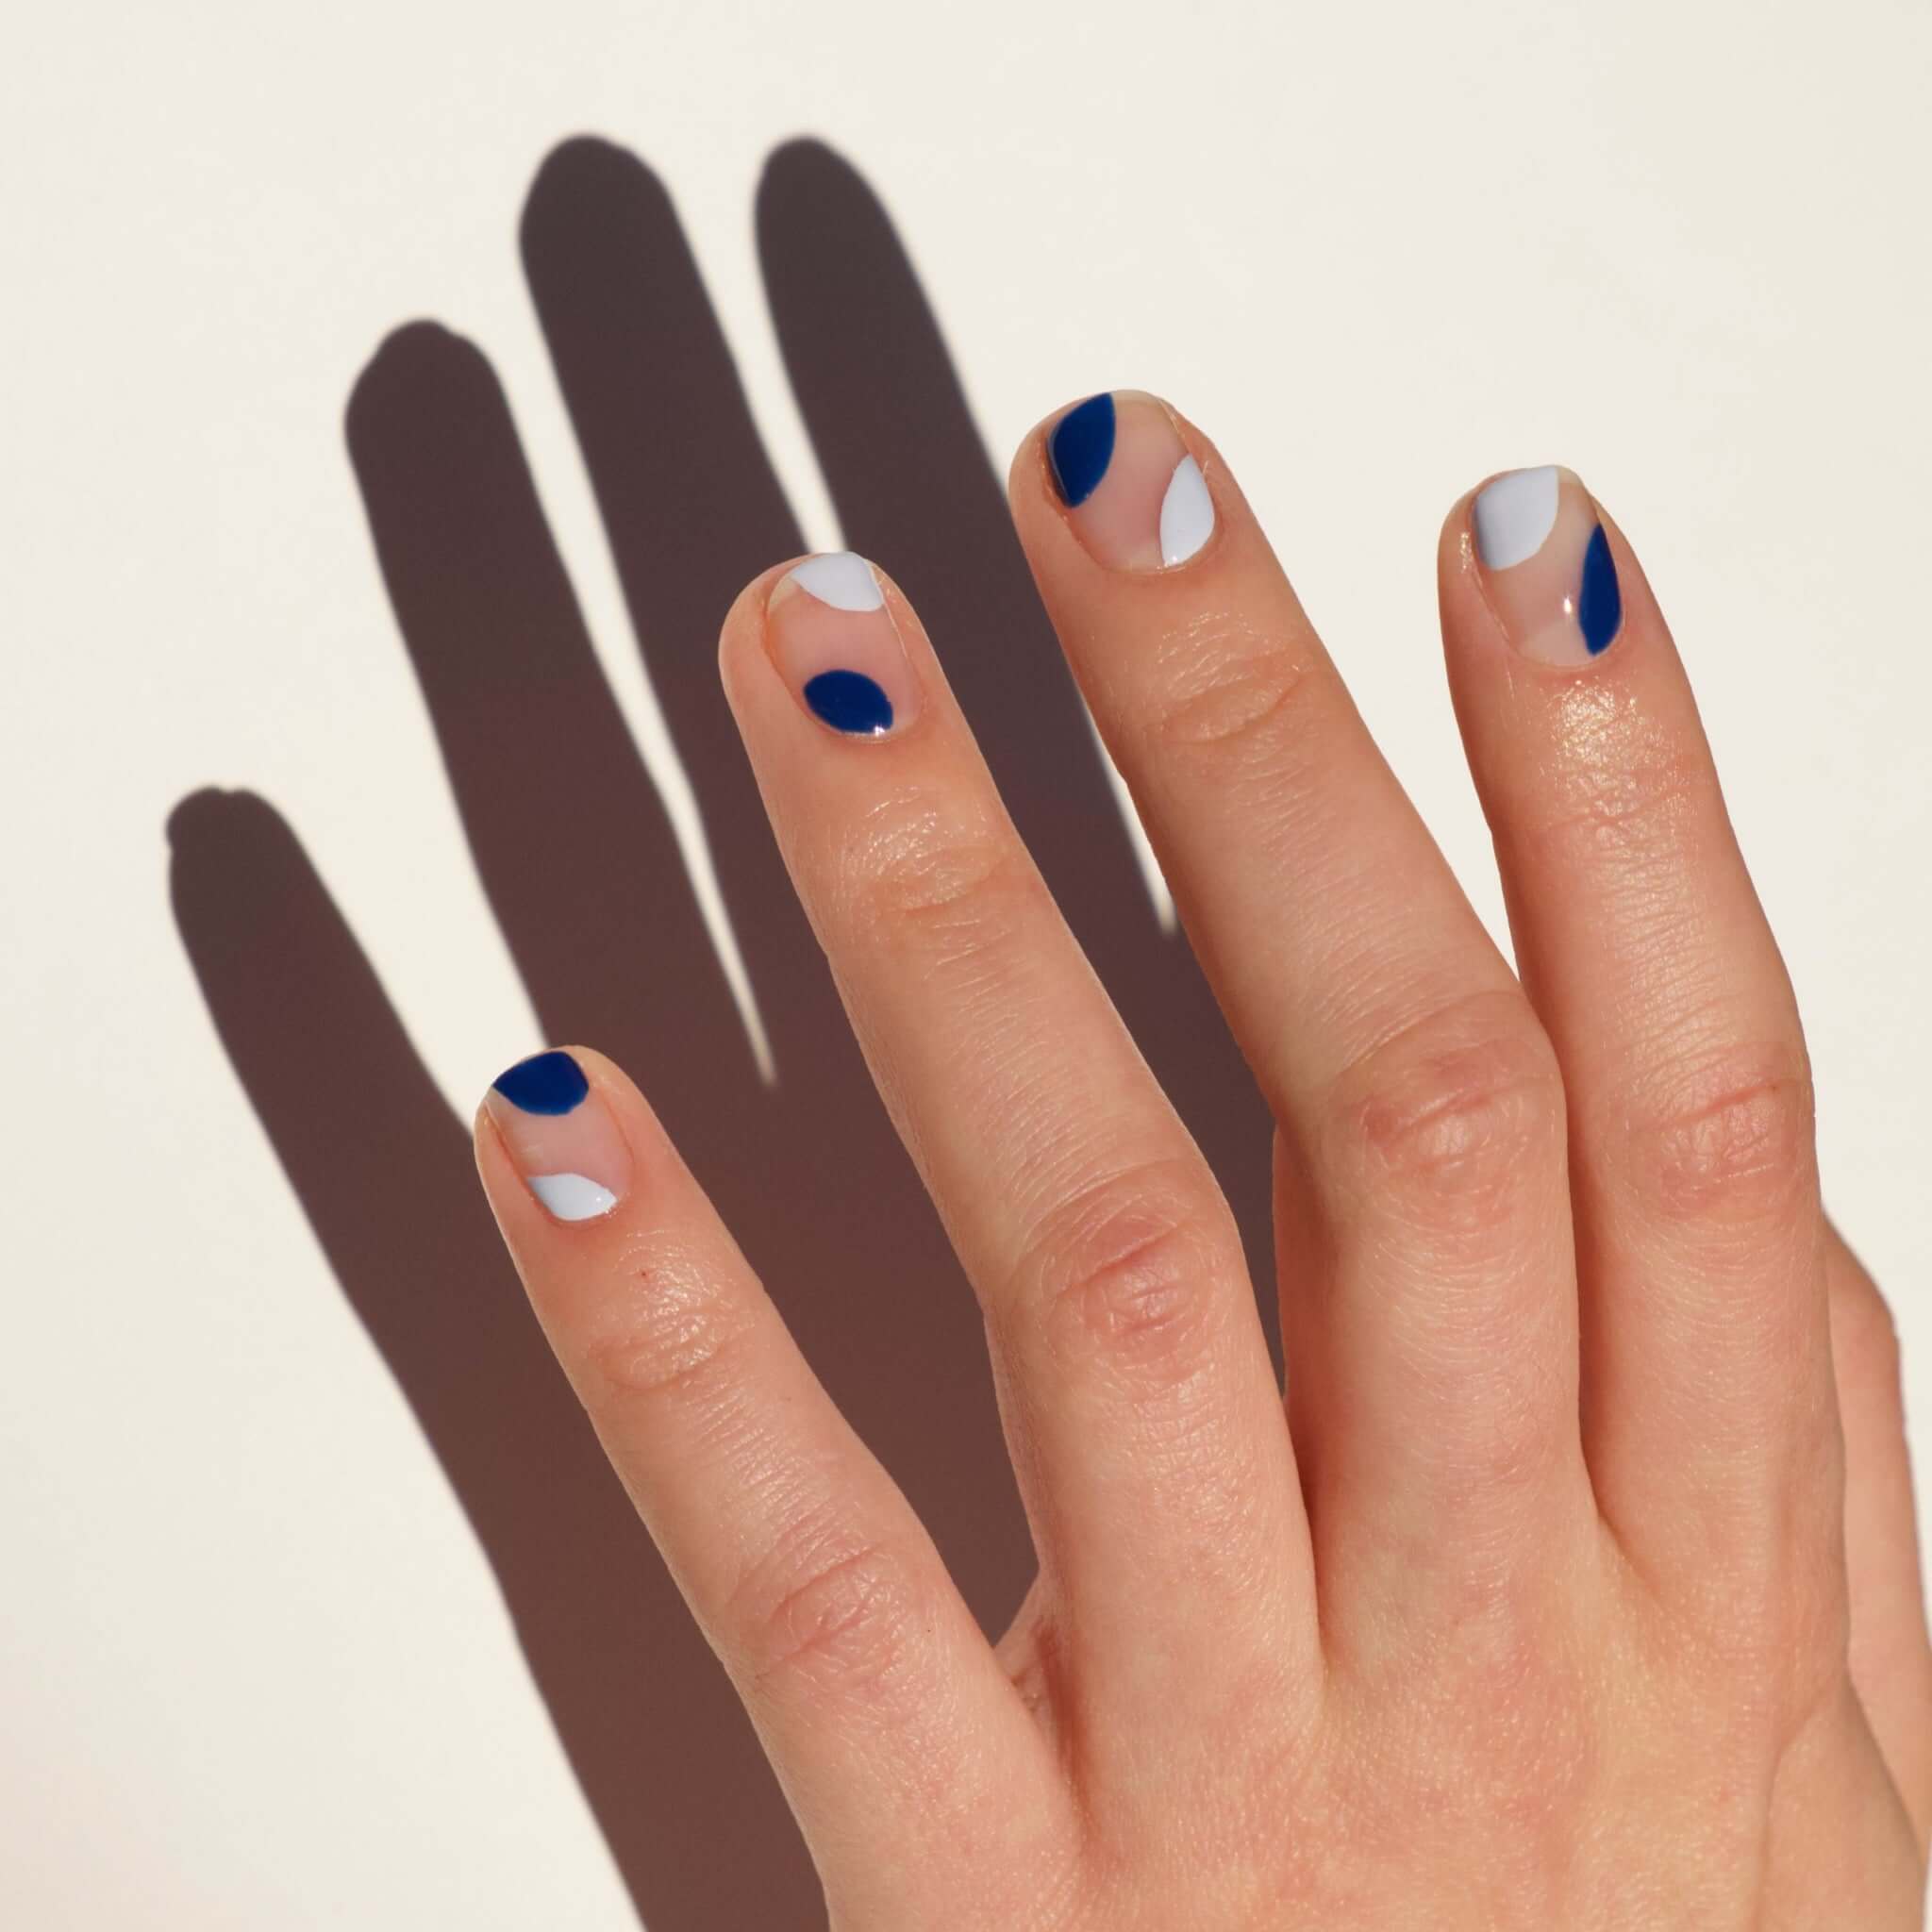 Light blue nail polish by Emily de Molly